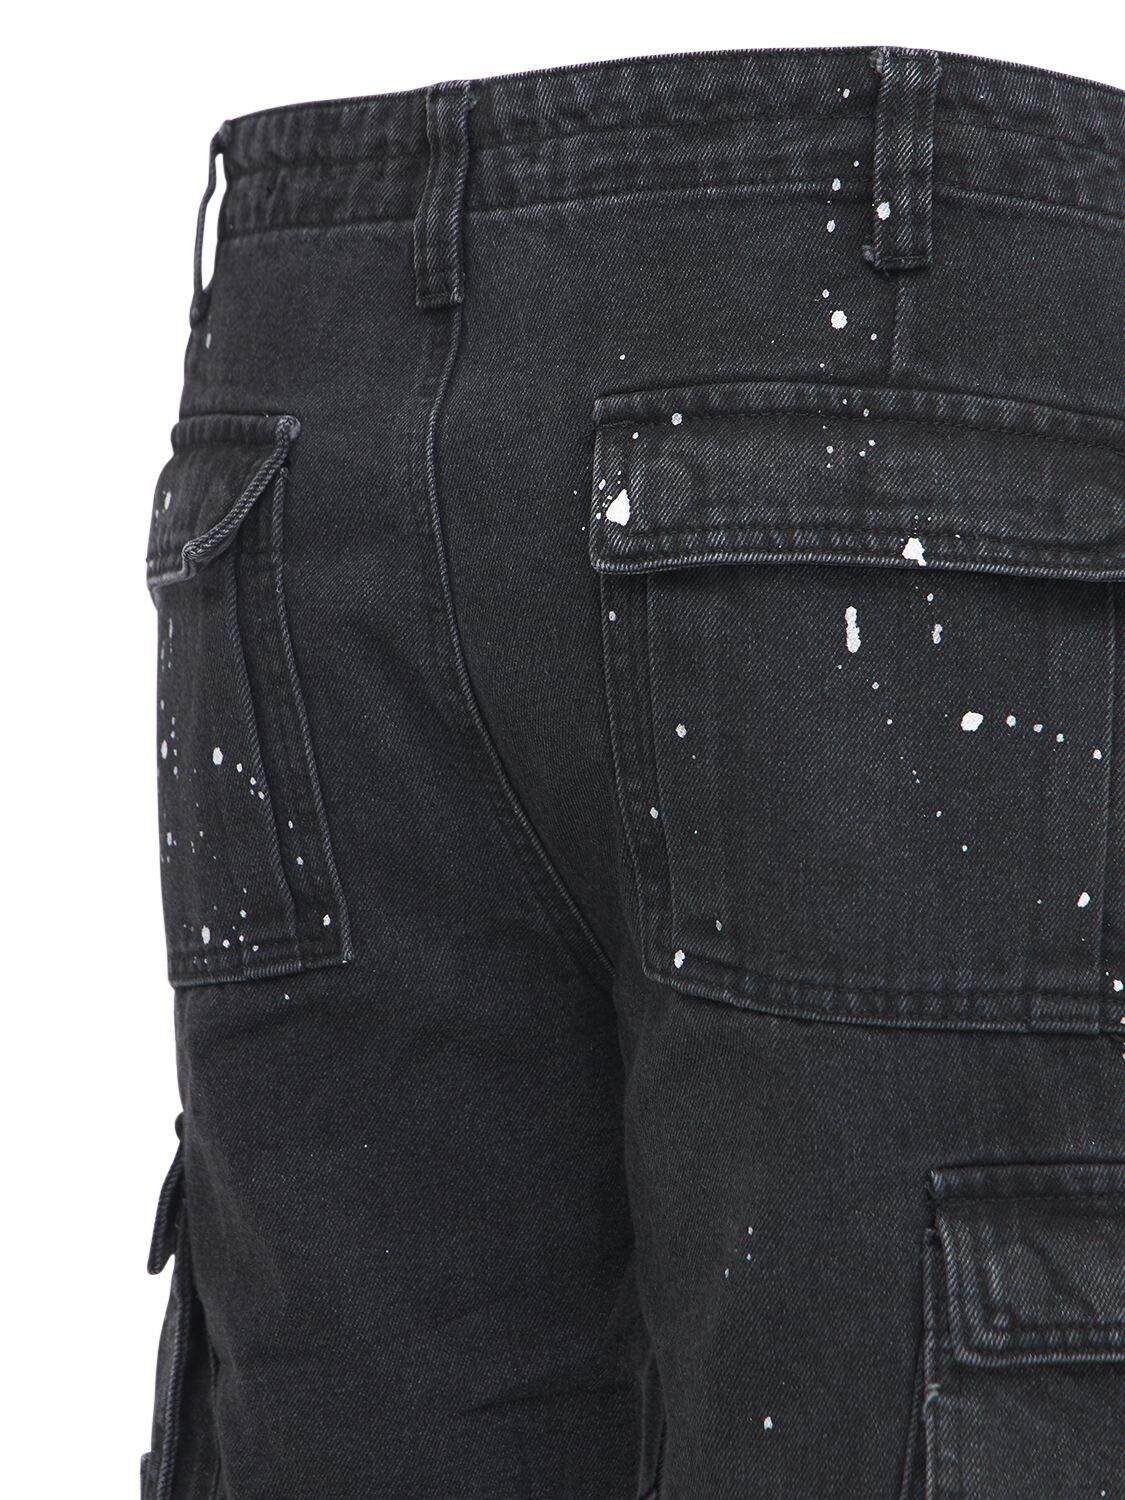 Jaded London Paint Splatter Paneled Cargo Pants in Black for Men 